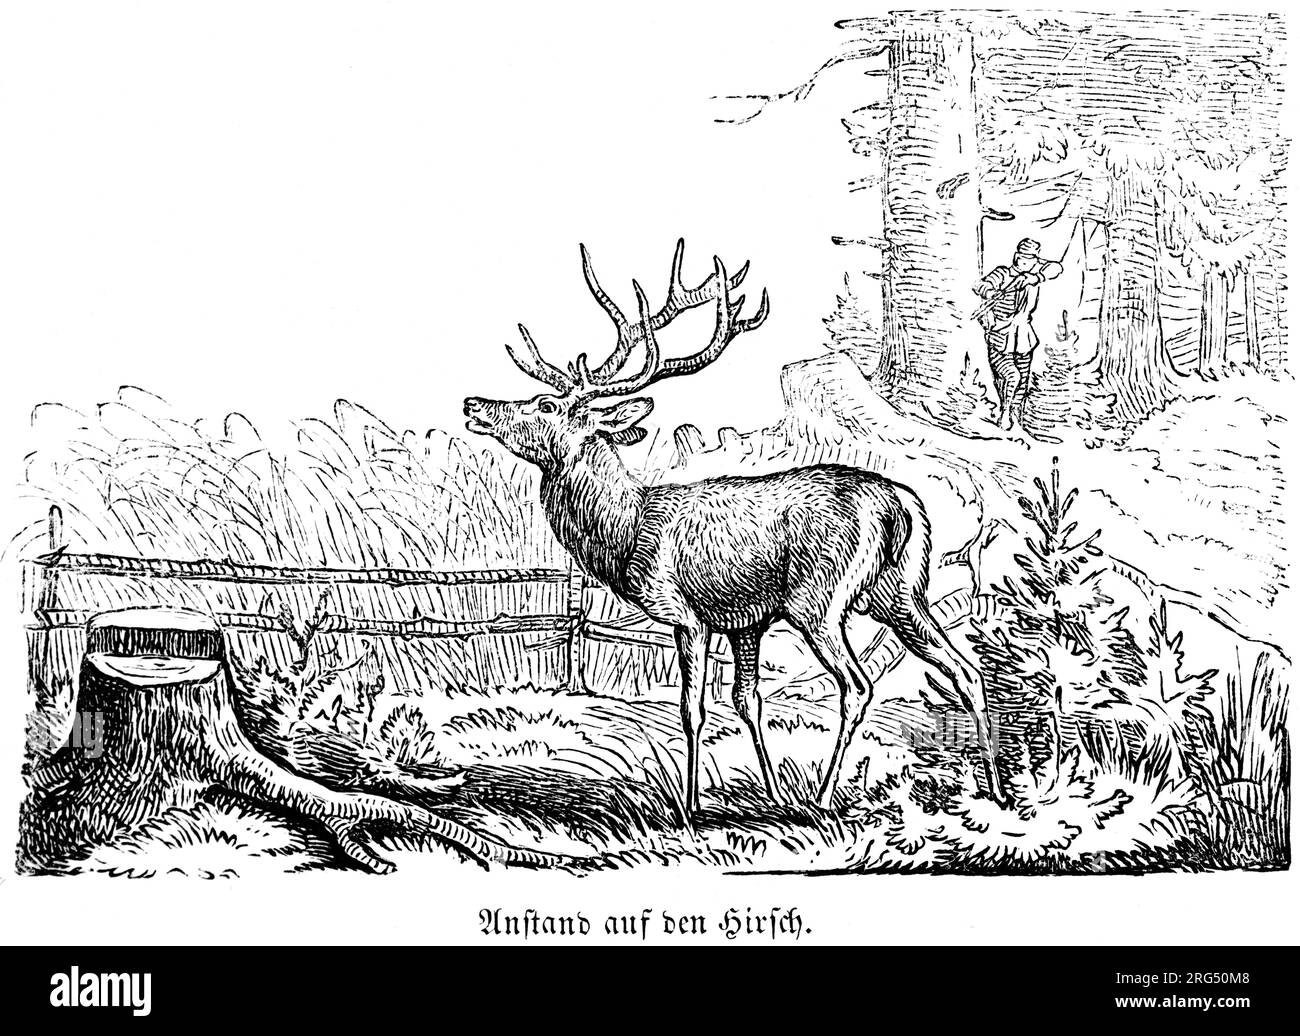 Erhöhtes Versteck für die Aufnahme des Hirschs, Anstand auf den Hirsch, wilde Tiere und Jagdszenen, historische Illustration about1860 Stockfoto